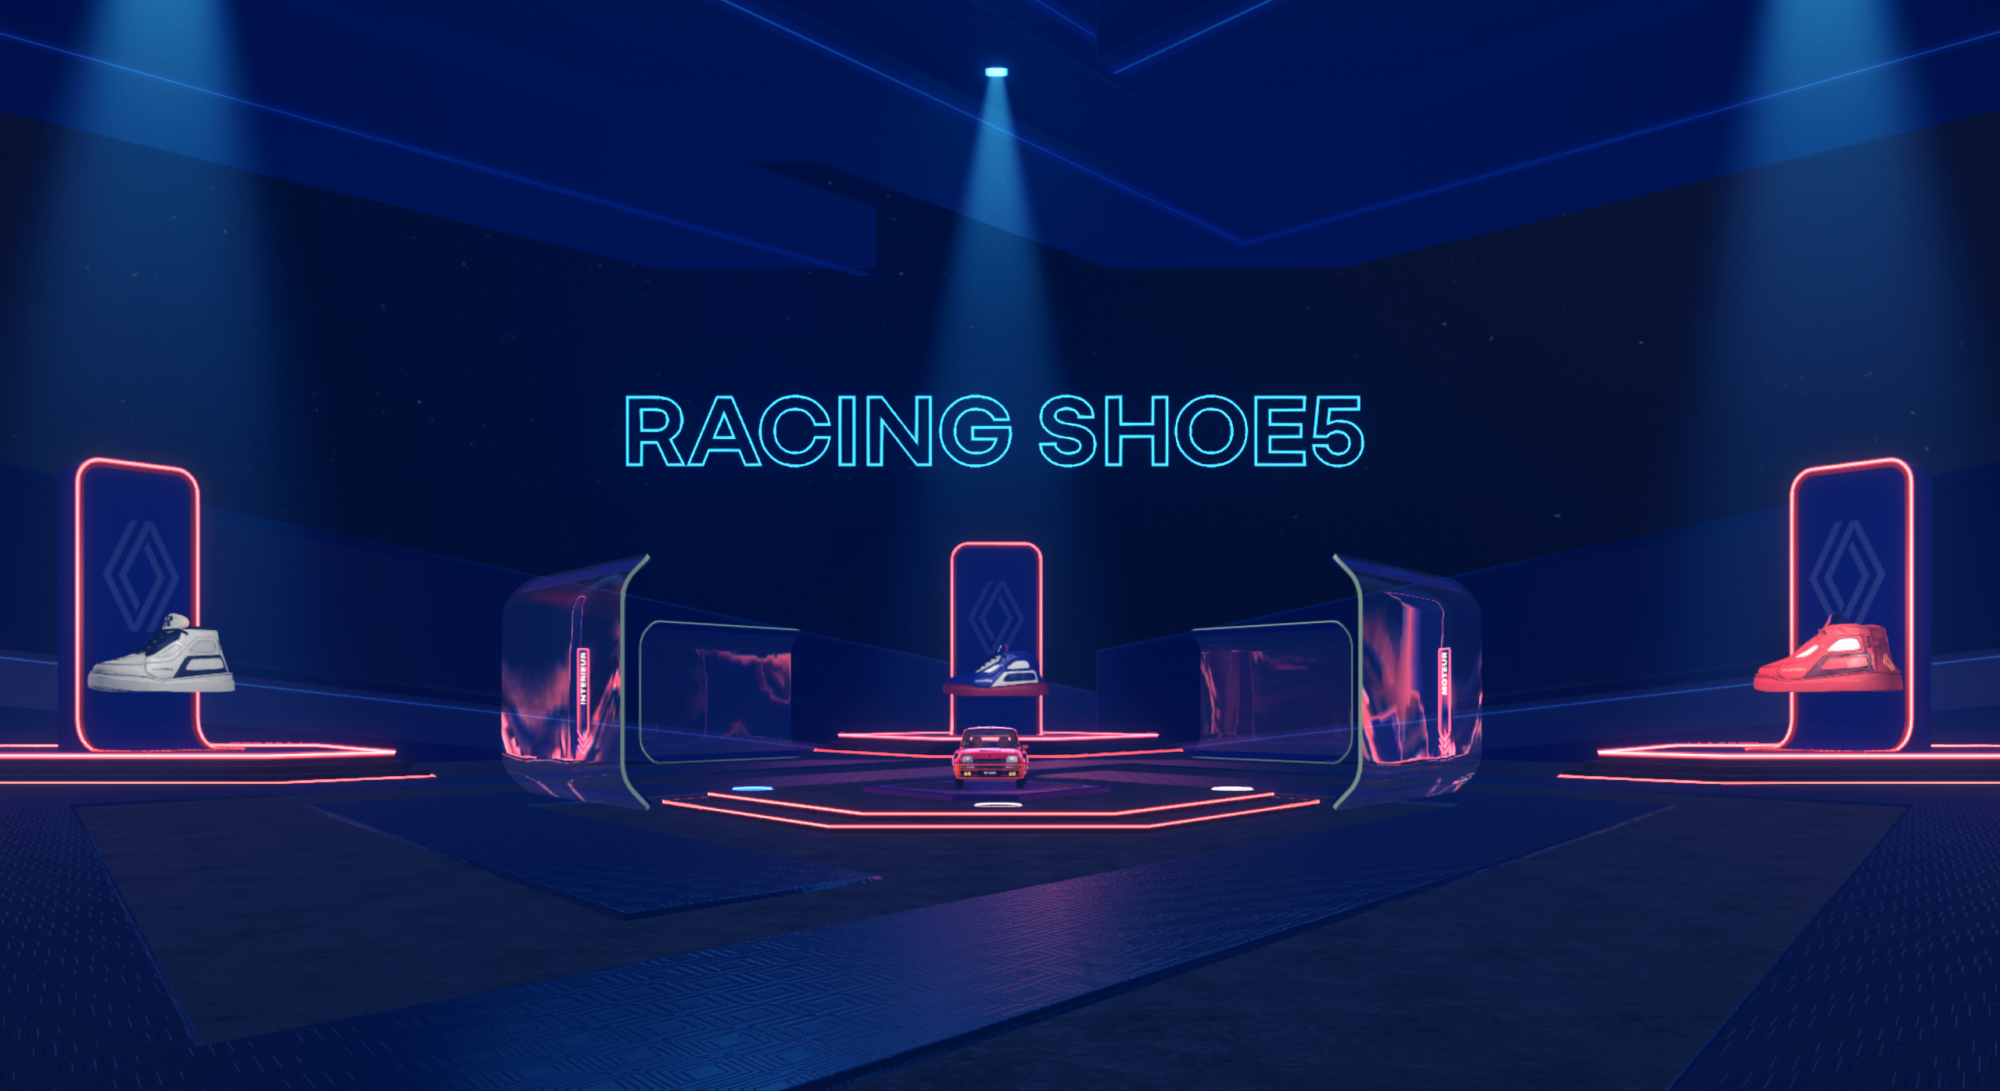 RACING SHOE5 : l’édition collector de sneakers, inspirée de R5 Turbo